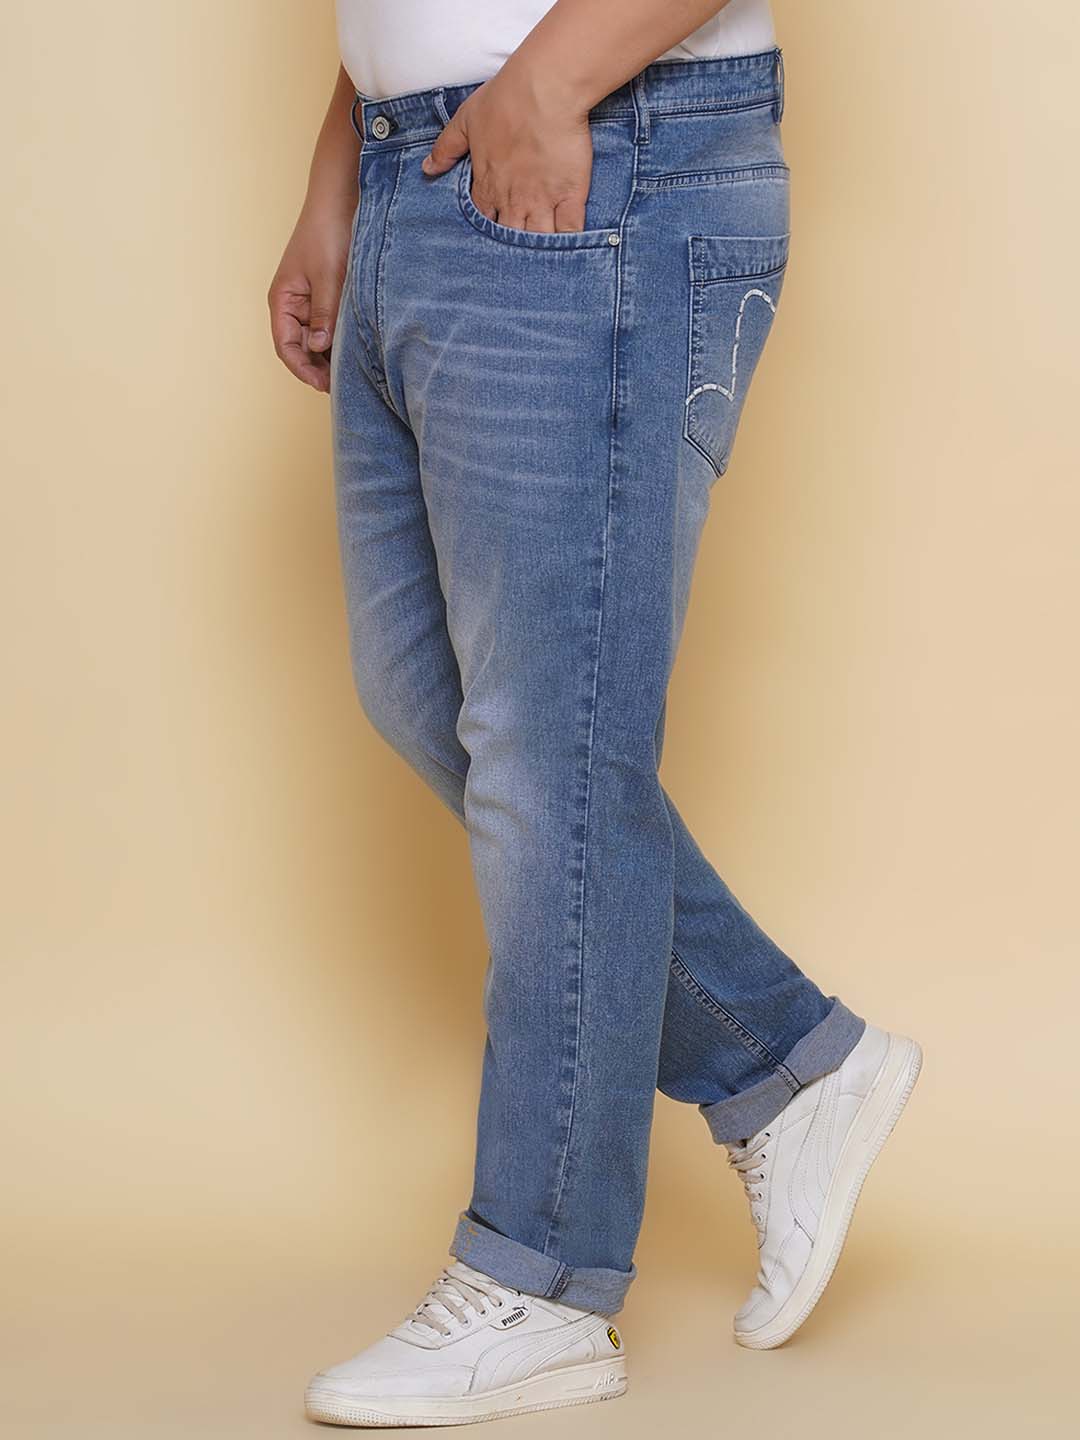 bottomwear/jeans/EJPJ25134/ejpj25134-4.jpg